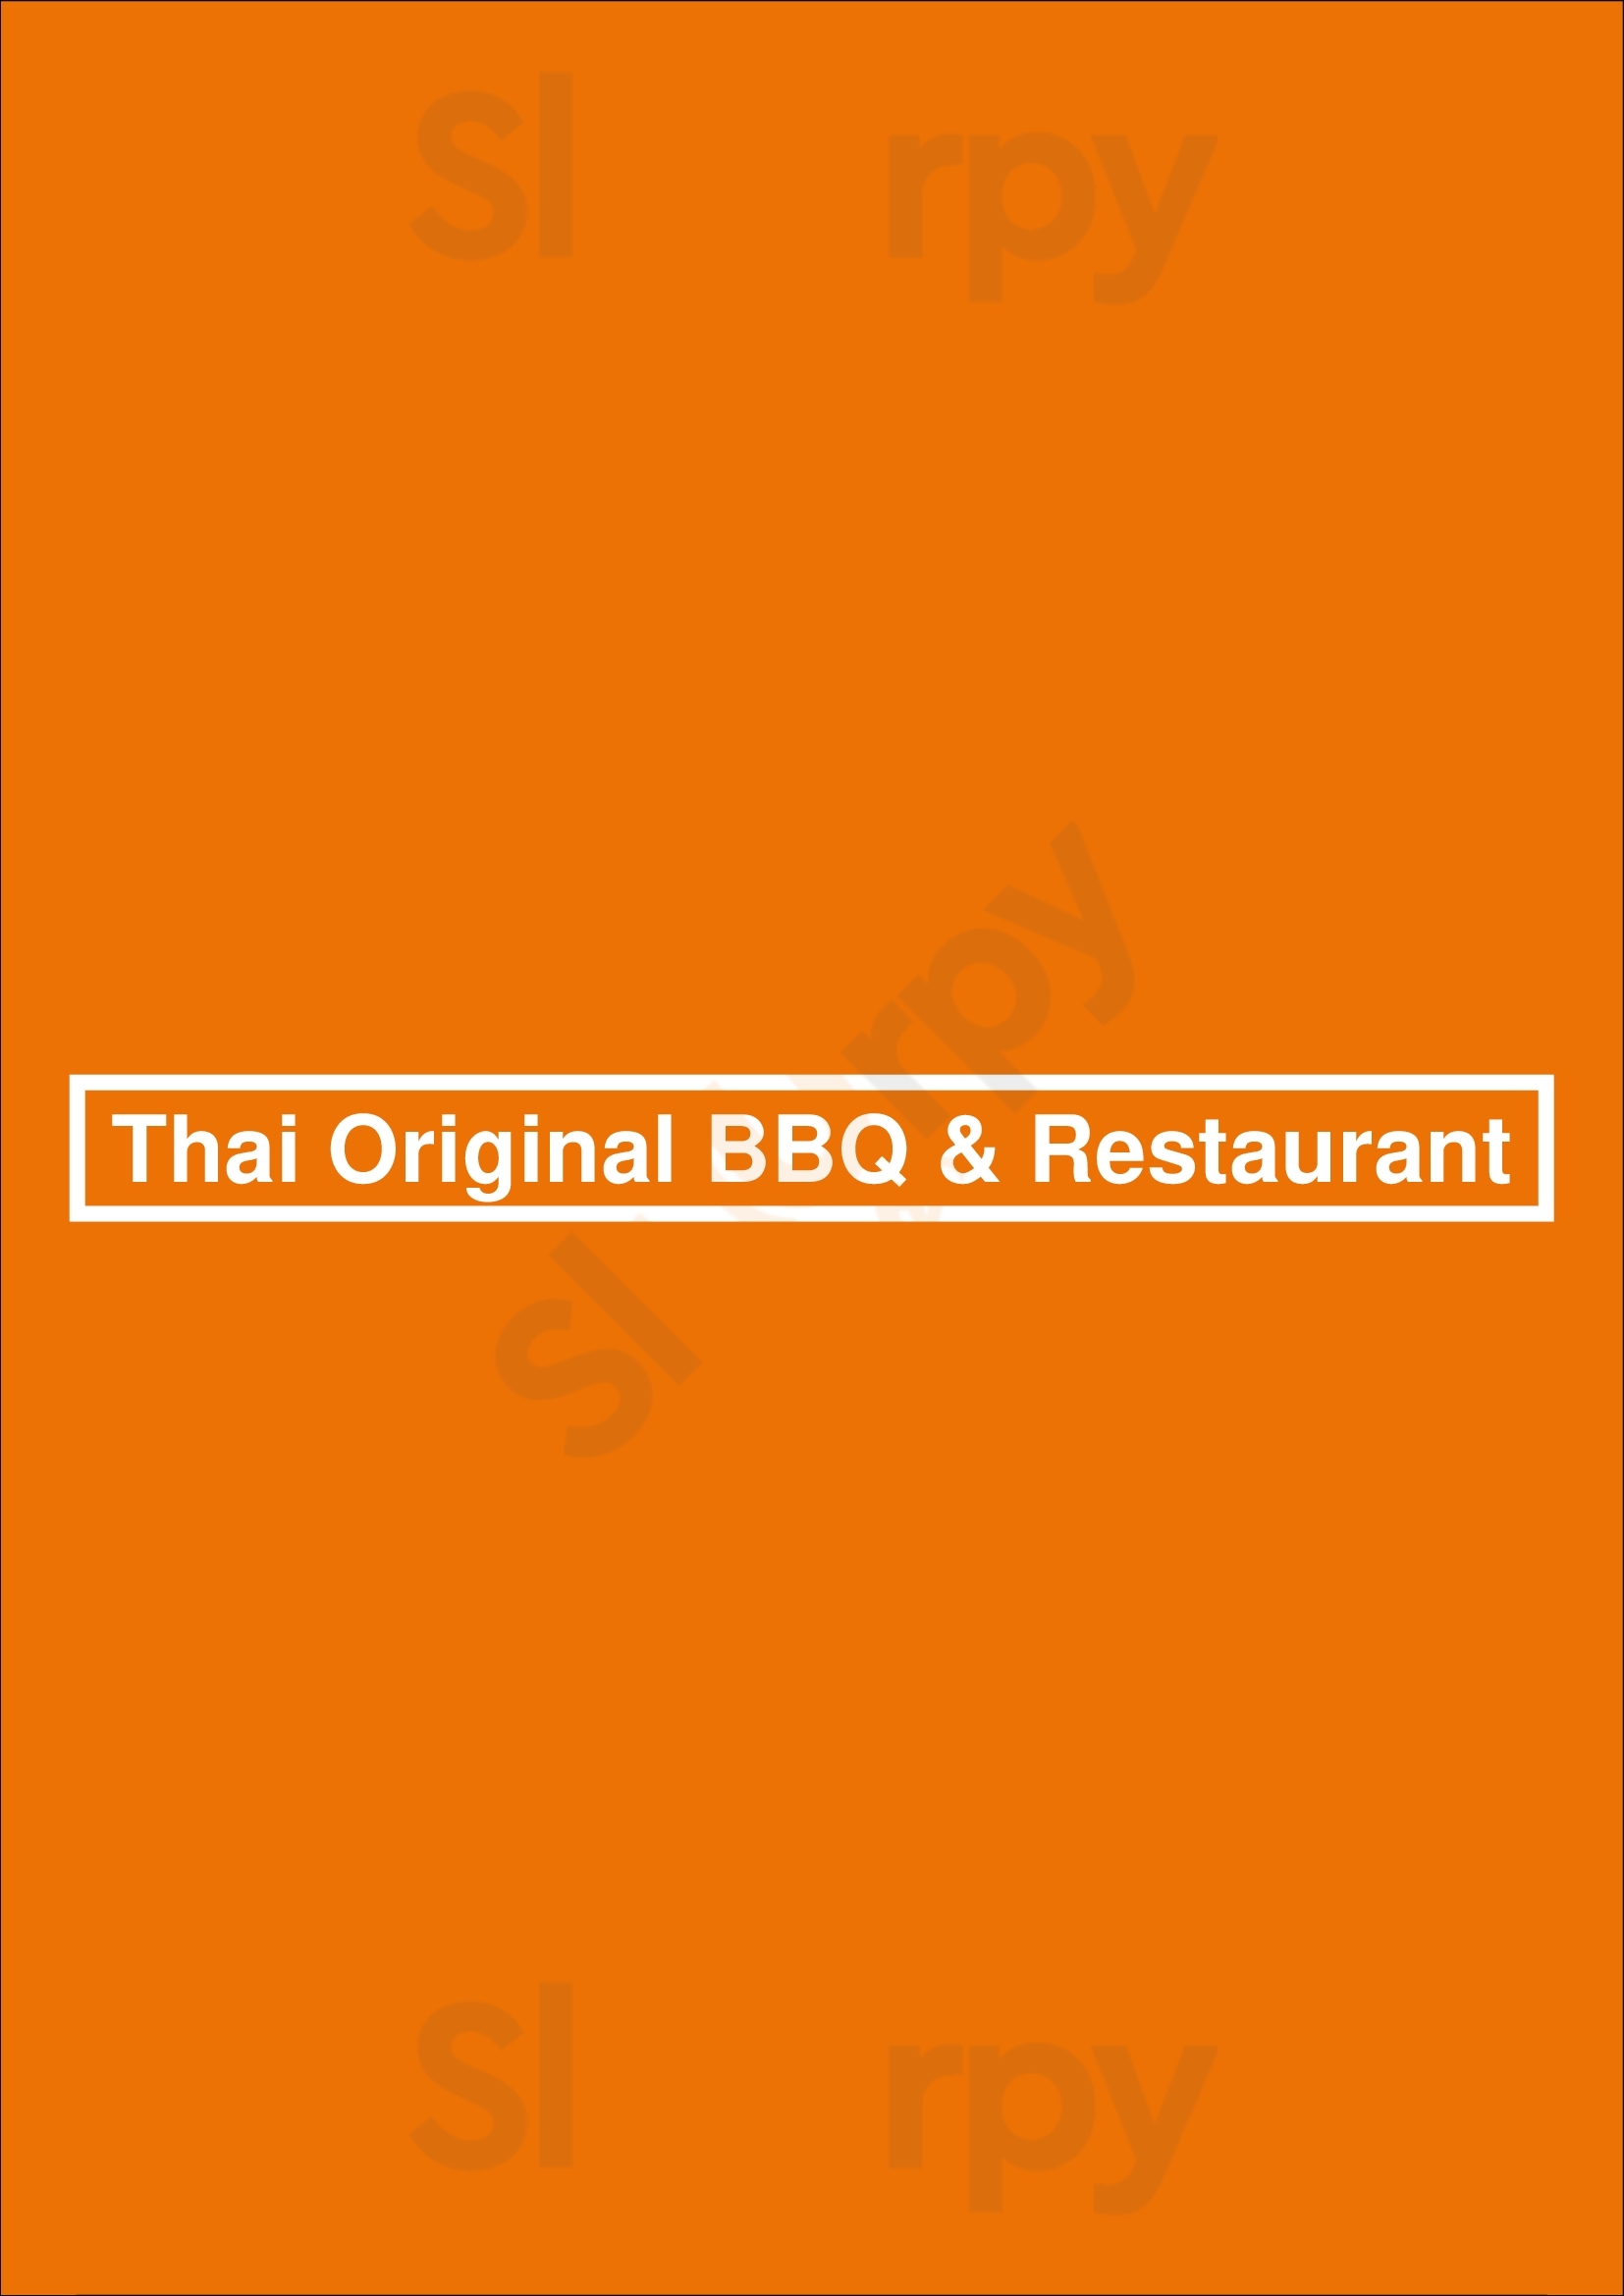 Thai Original Bbq & Restaurant Long Beach Menu - 1